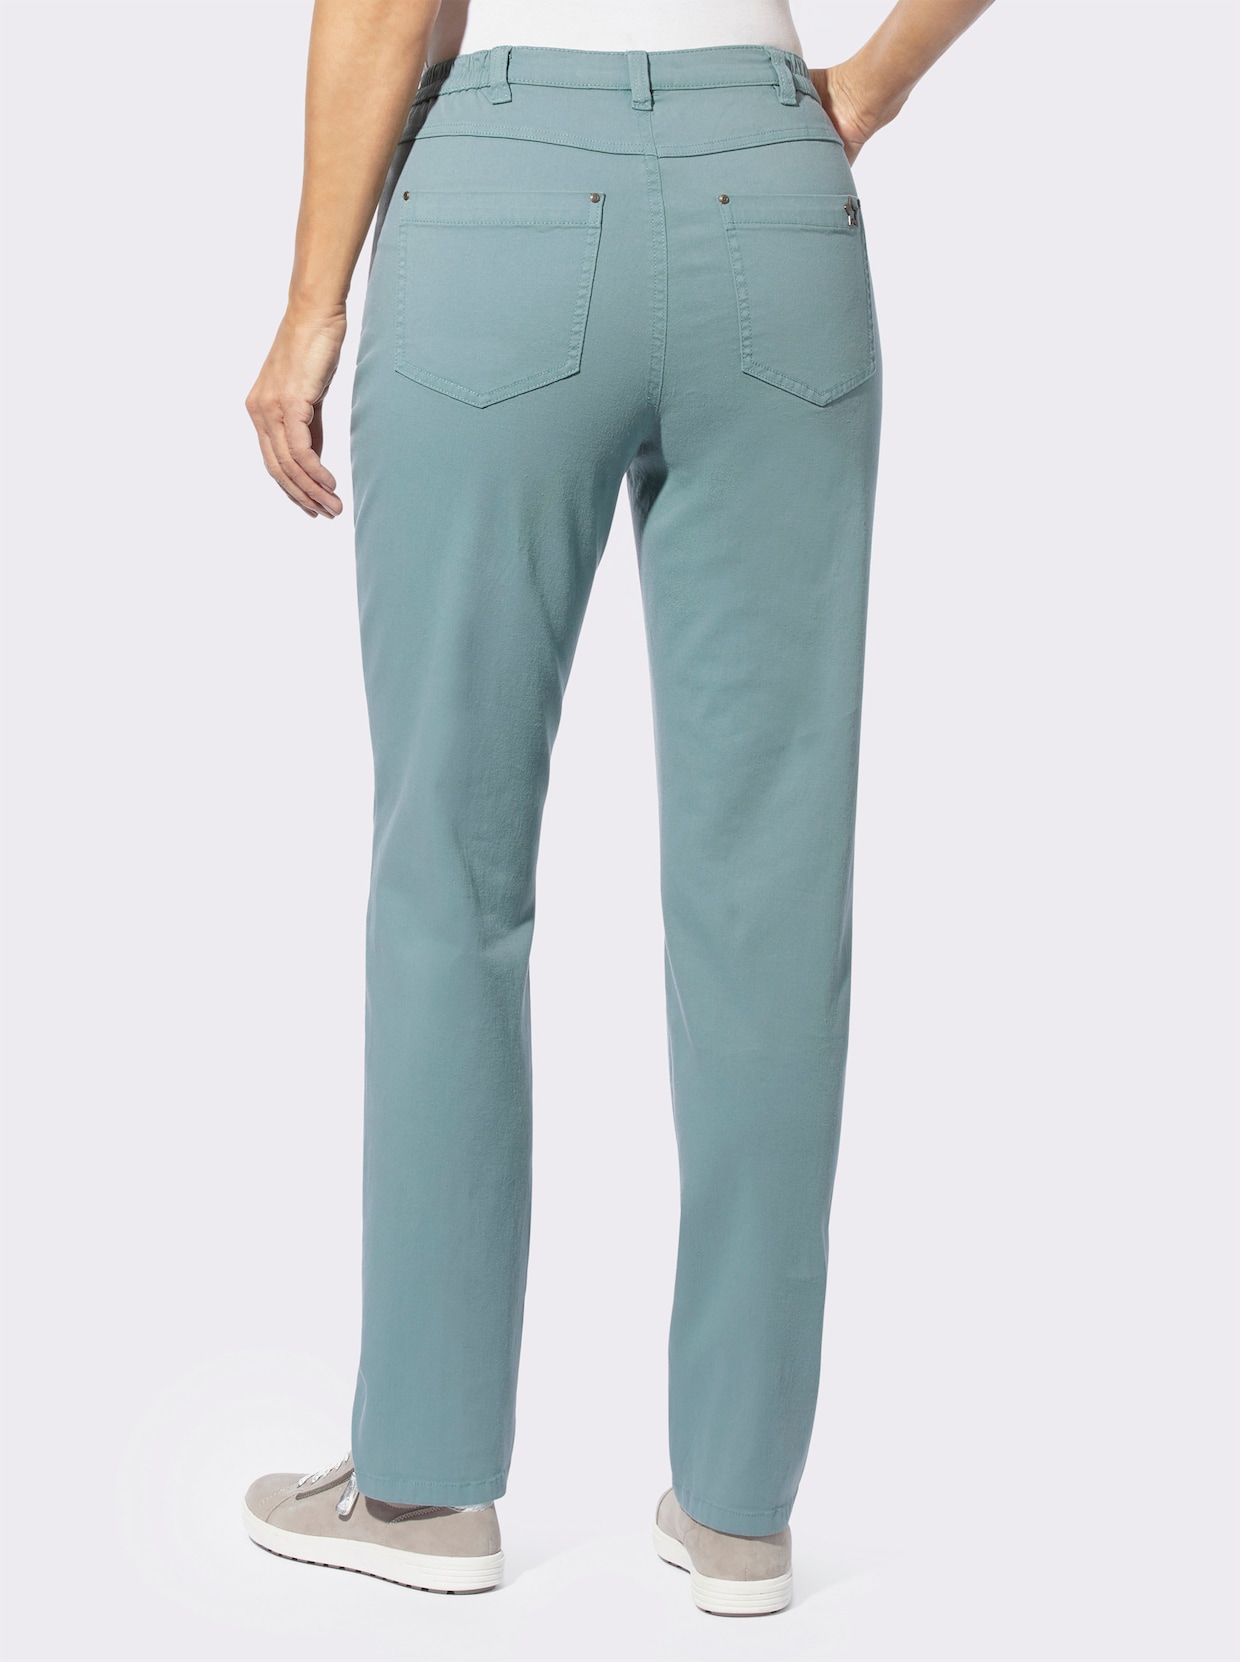 Kalhoty s 5 kapsami - nefritová